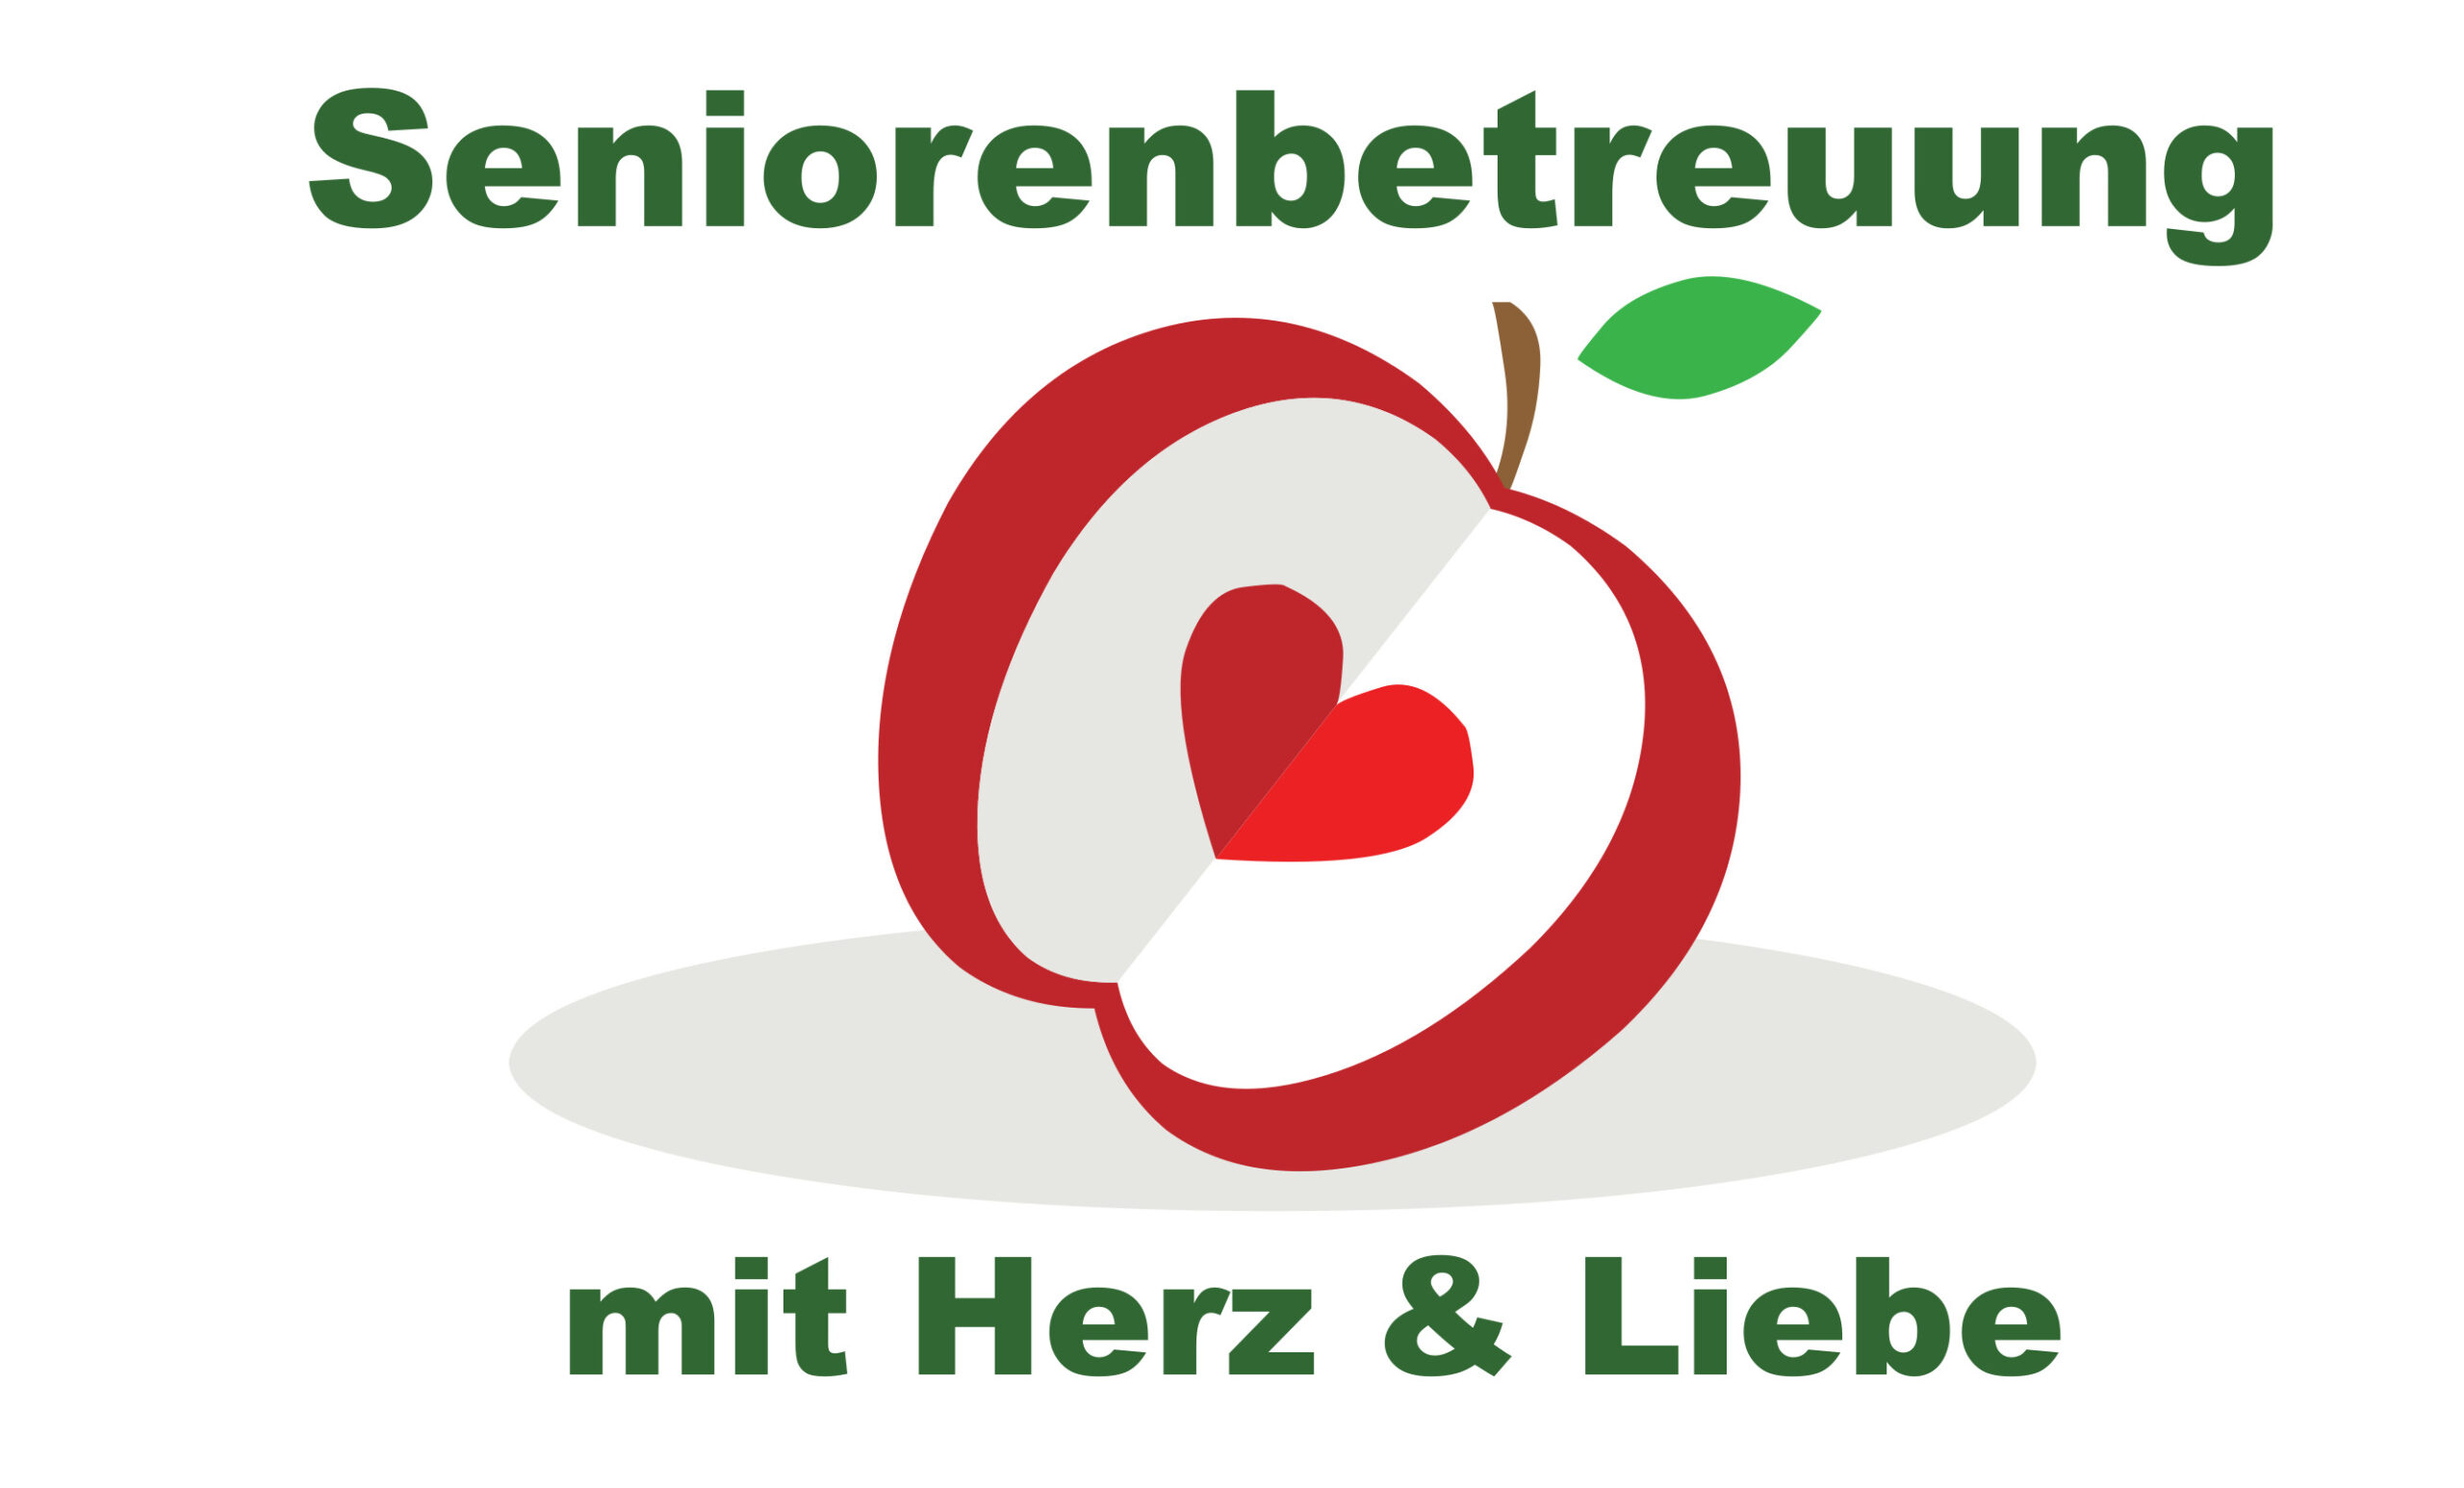 Seniorenbetreuung mit Herz & Liebe Logo